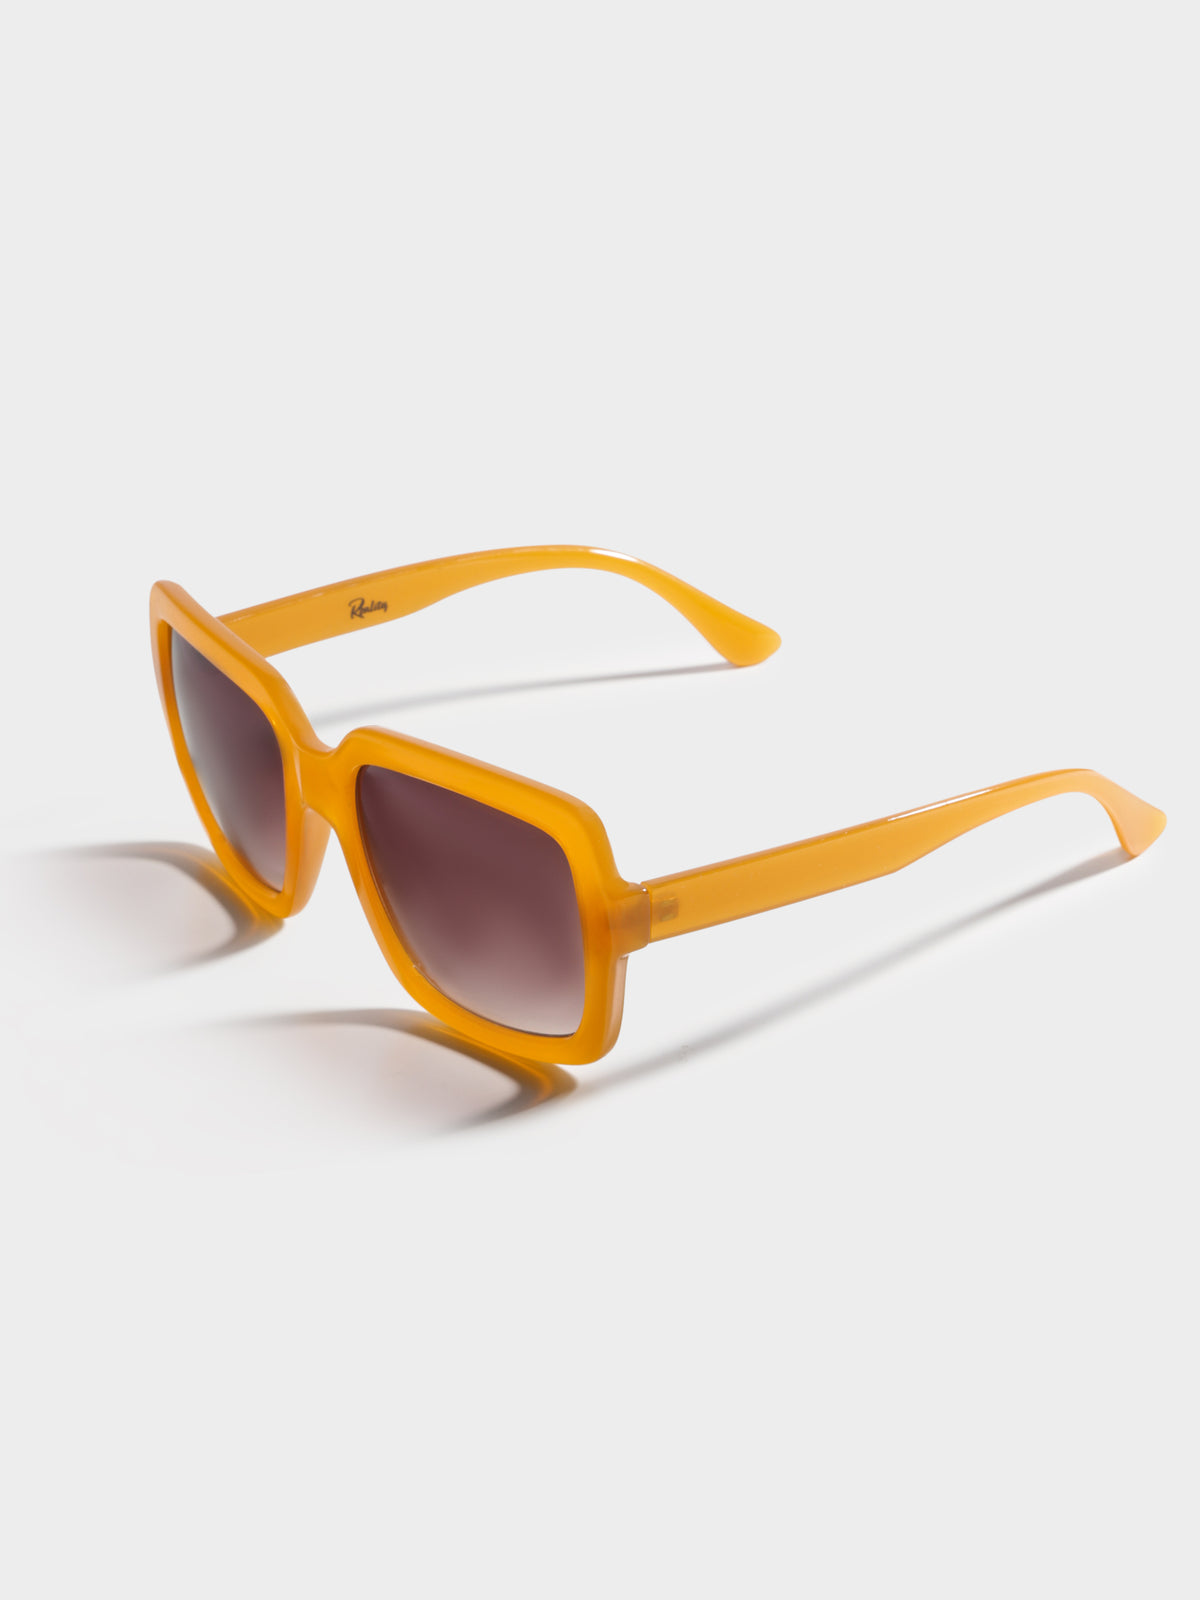 Le Brera Square Sunglasses in Mustard